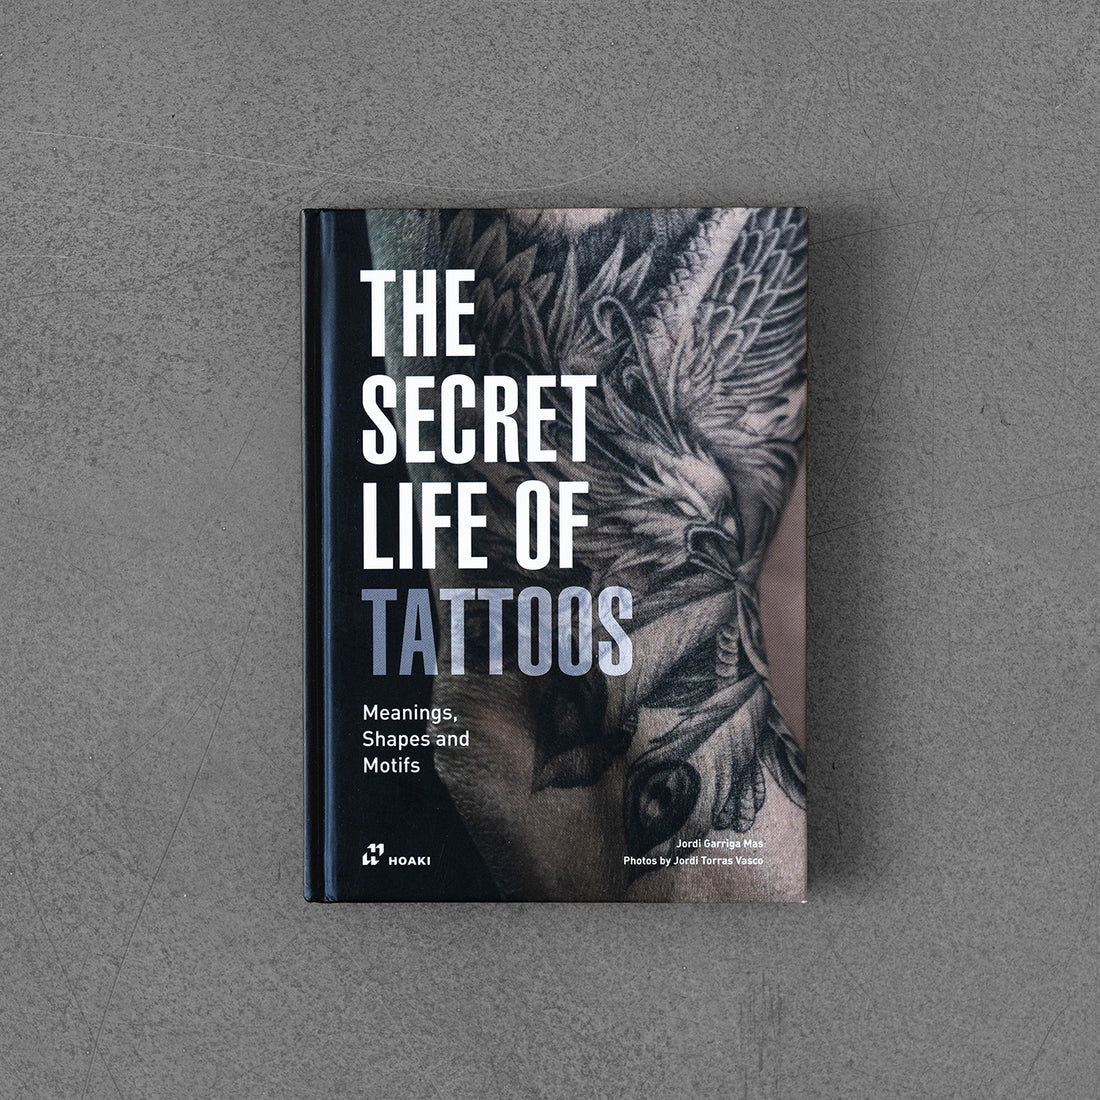 Sekretne życie tatuaży